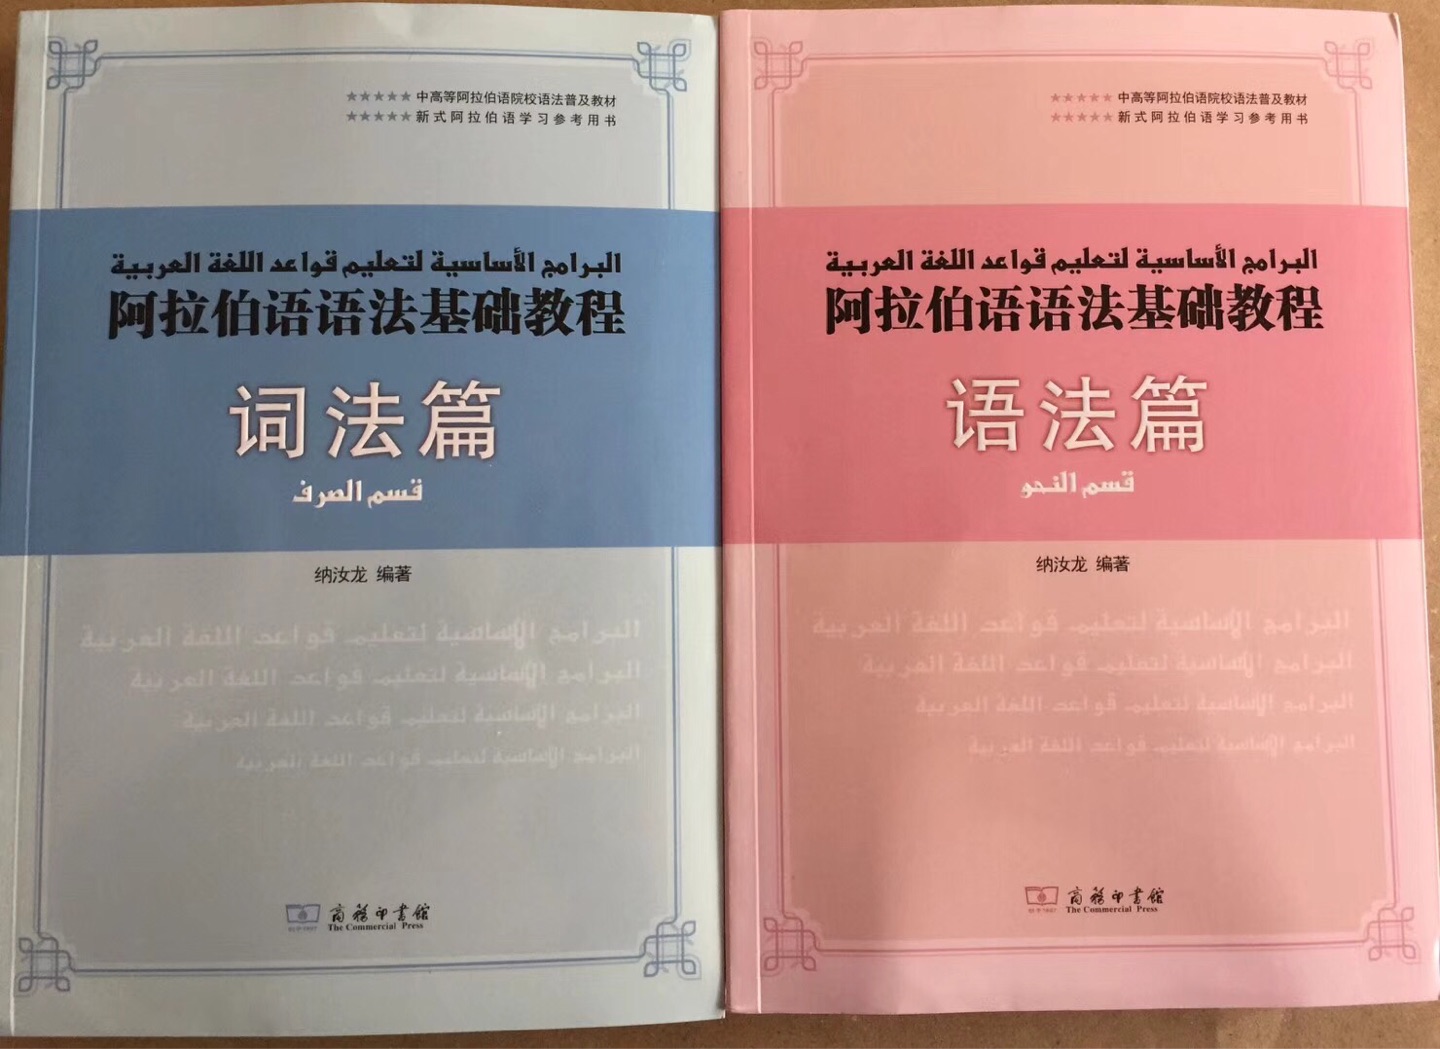 商务出版社新出的正版书籍，对于学校阿拉伯语的人来说是最佳选择，印刷清晰 内容丰富